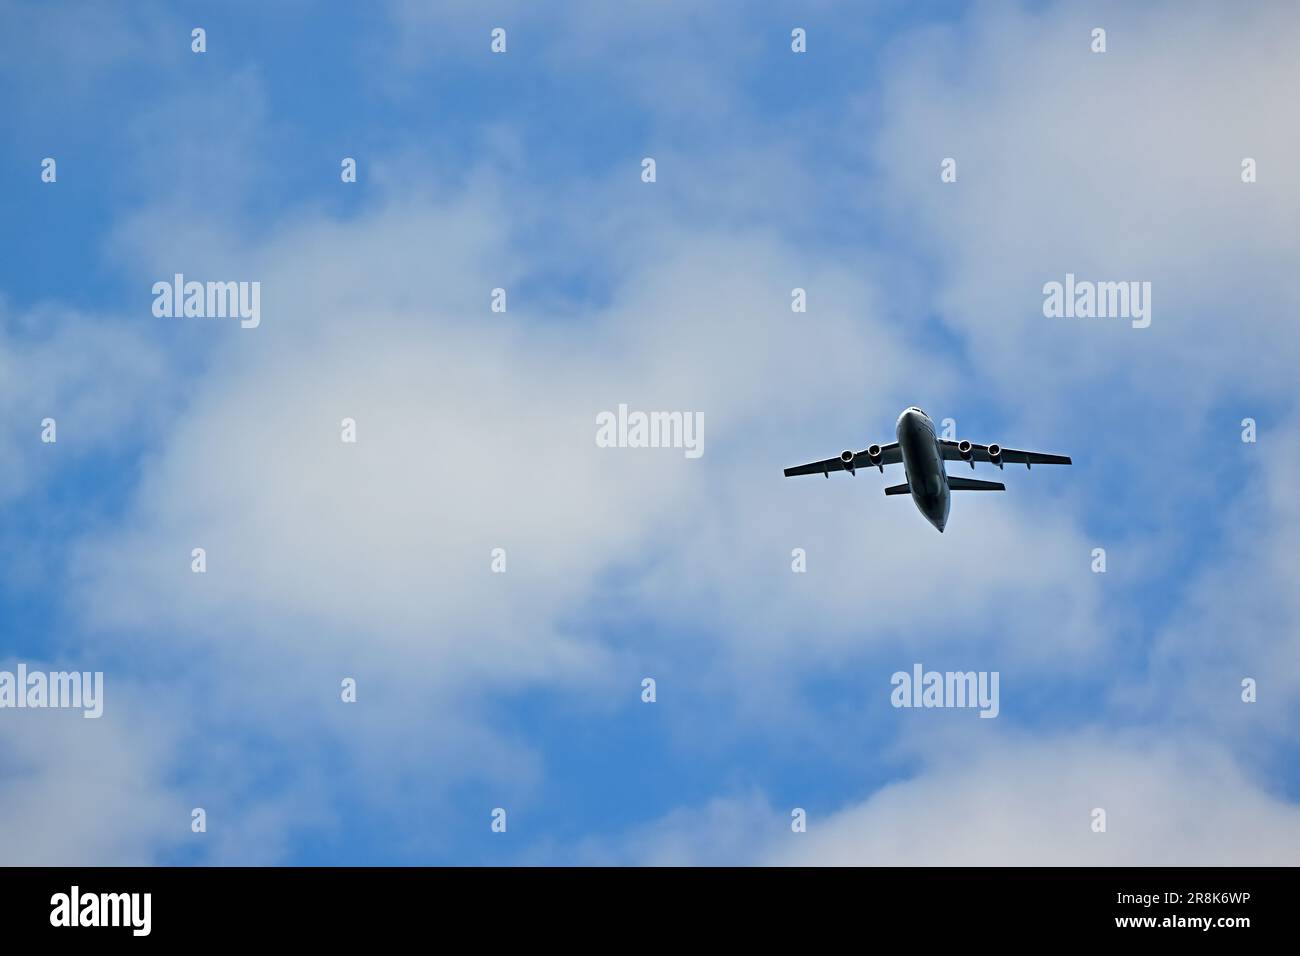 Un avion de transport de passagers volant dans un ciel rempli de nuages Banque D'Images